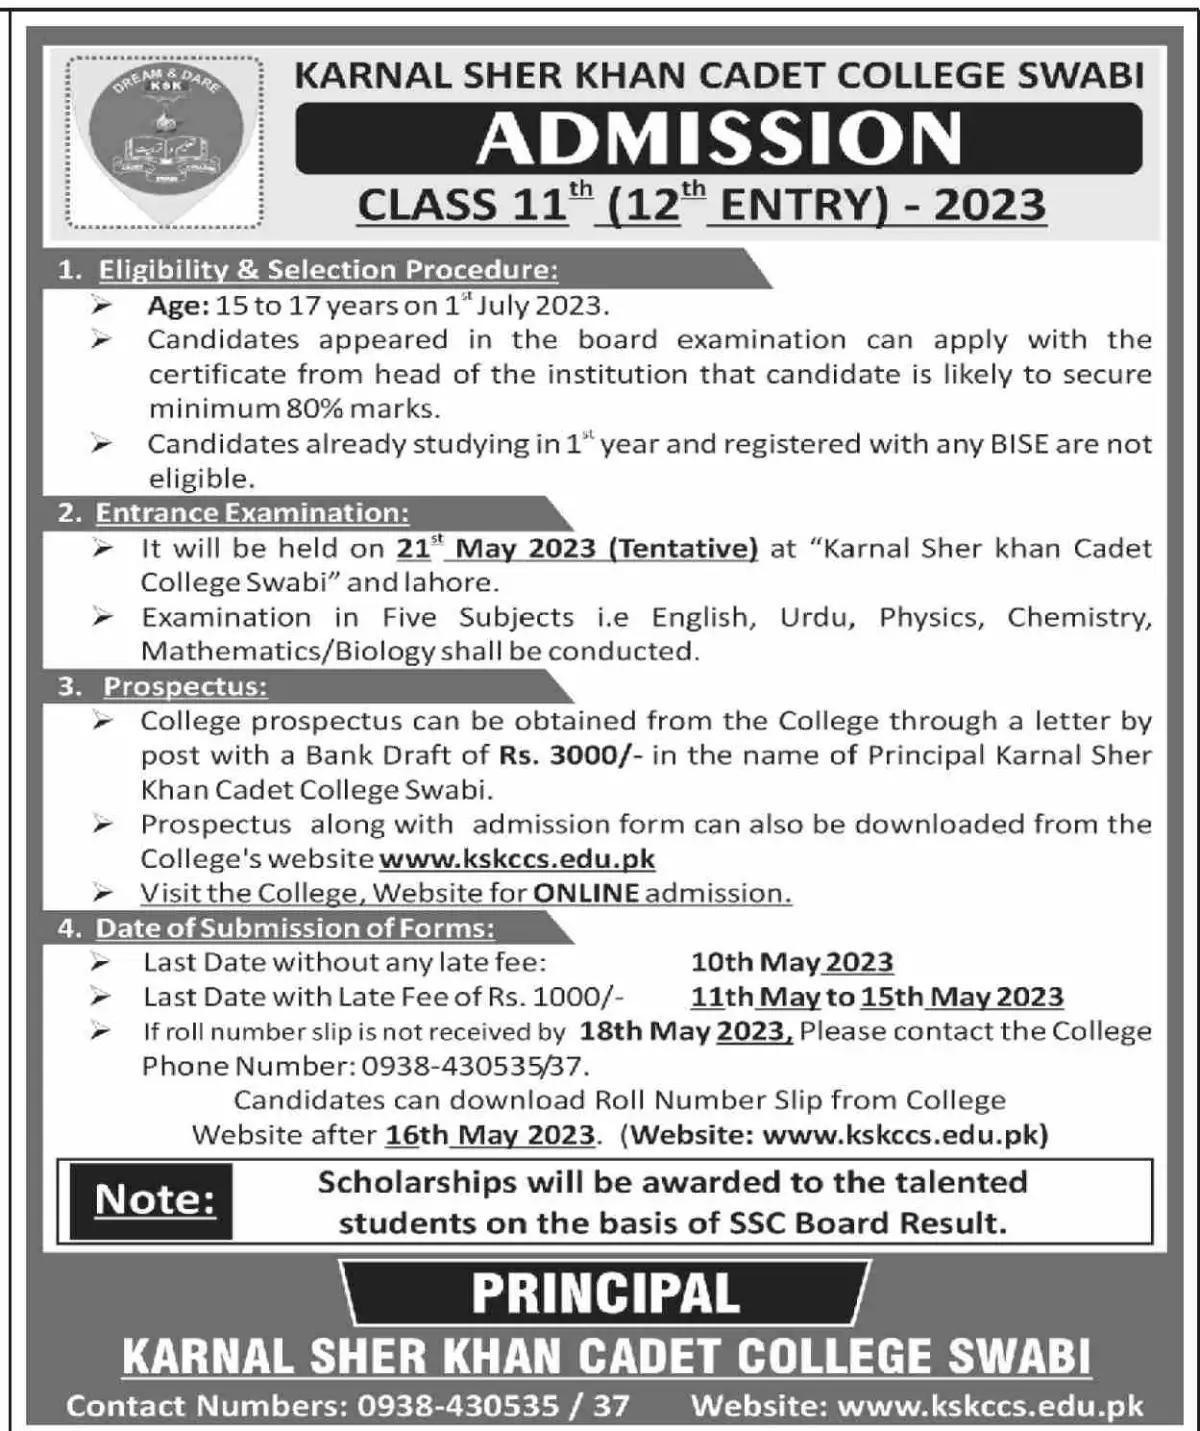 Karnal Sher Khan Cadet College Swabi Admission 2023 Entry